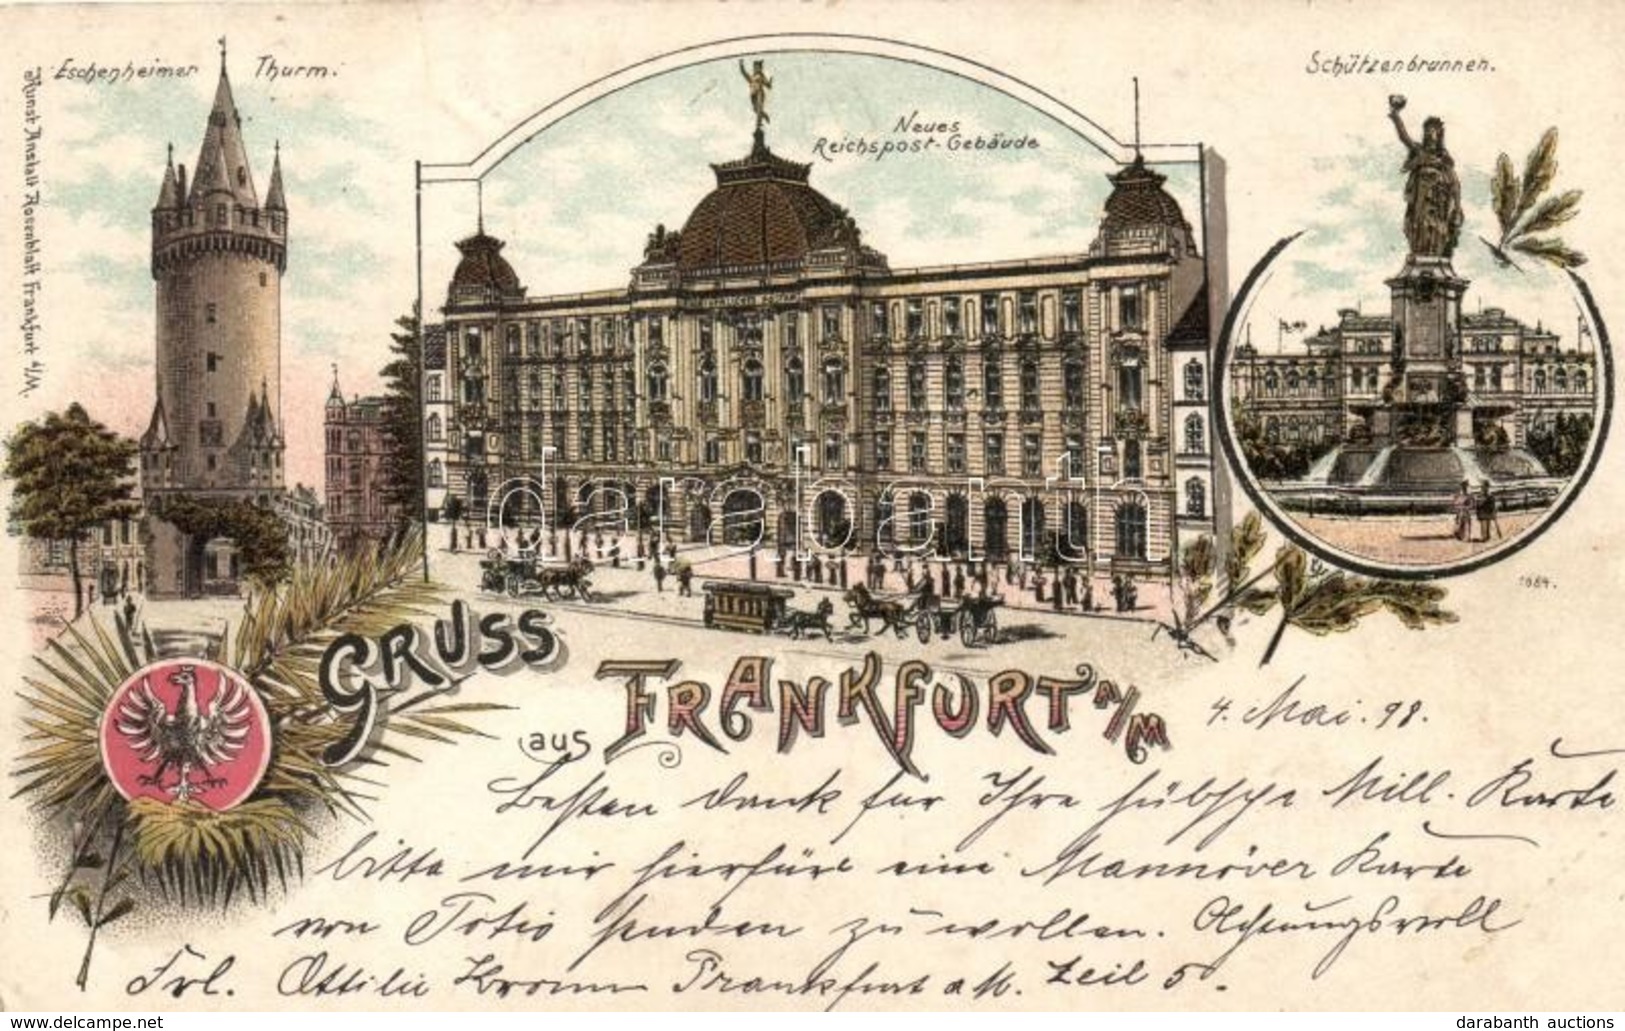 T2/T3 1898 Frankfurt, Eschenheimer Thurm, Neues Reichspost-Gebaude, Schützenbrunnen / Tower, Post Office, Fountain, Kuns - Non Classificati